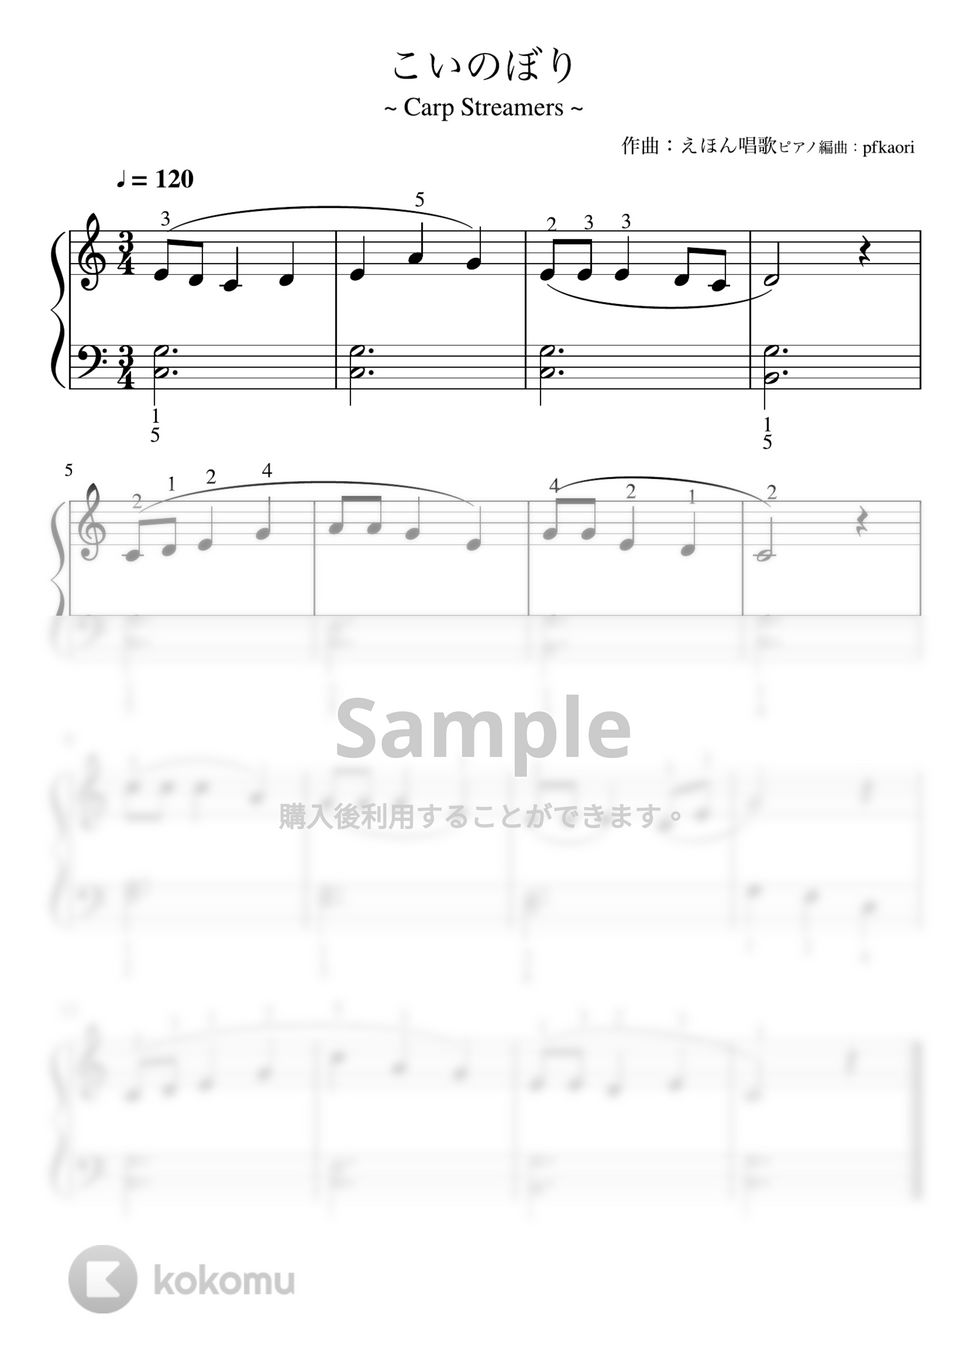 こいのぼり (Cdur・ピアノソロ初級・指番号付き) by pfkaori